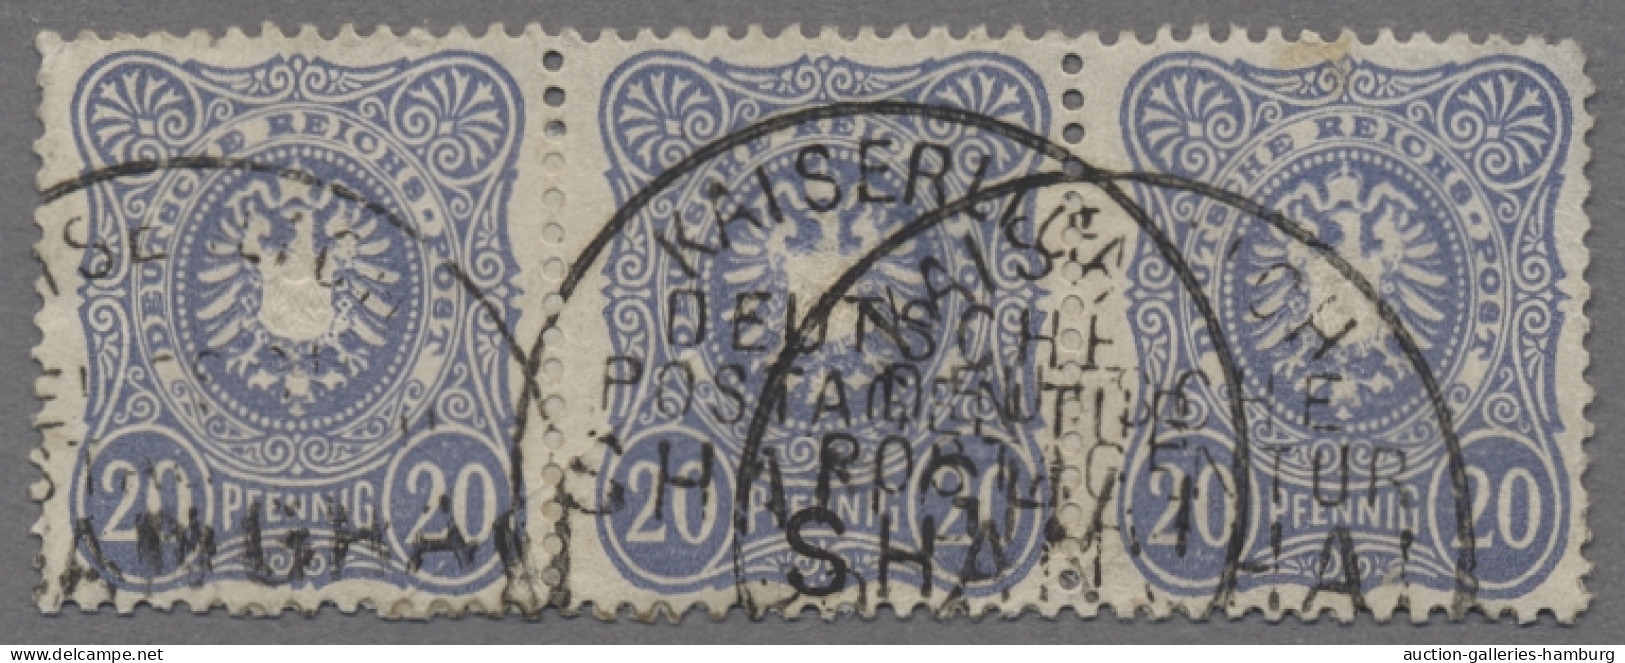 Deutsche Post In China - Vorläufer: 1886, Freimarke 20 Pfennig Dunkelultramarin - Chine (bureaux)